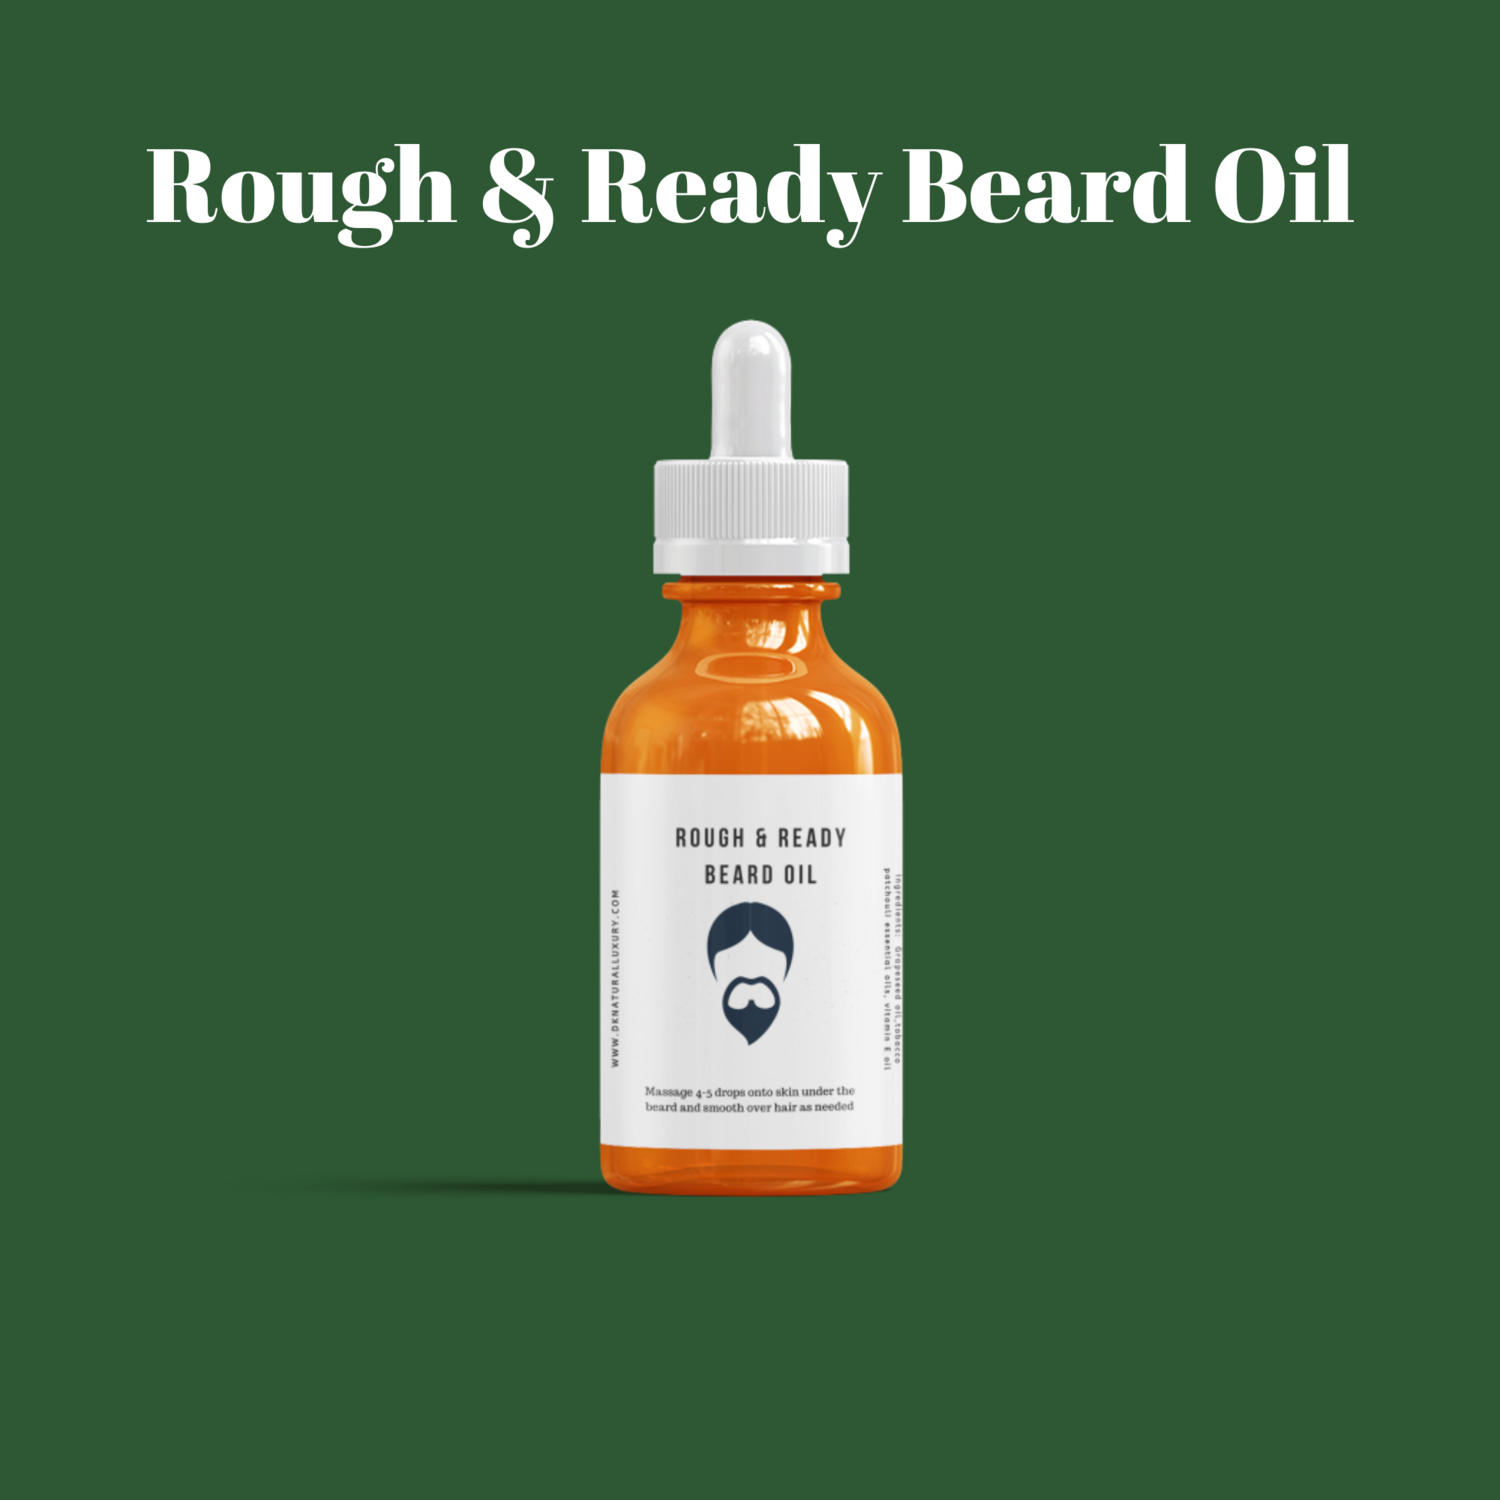 Rough & Ready Beard Oil